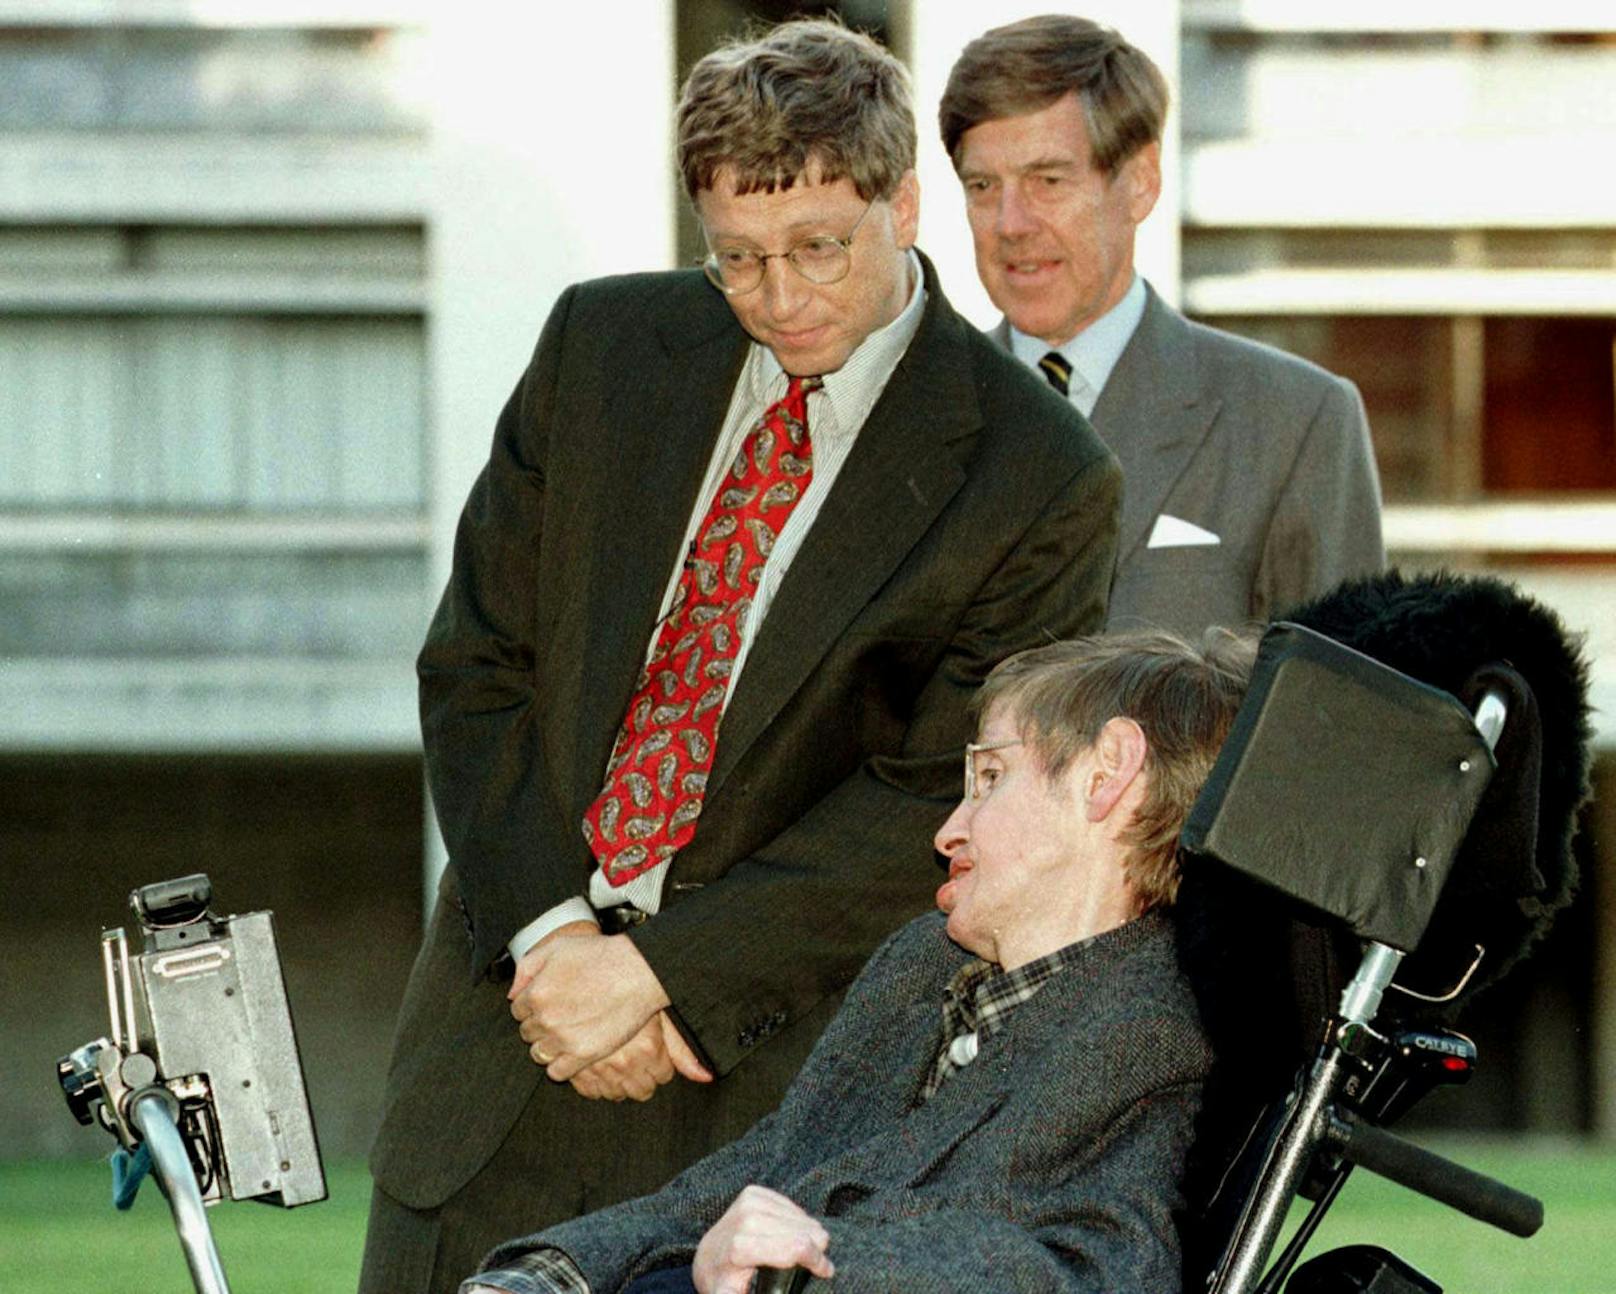 Der Physiker, hier mit Microsoft-Gründer Bill Gates, konnte seit Jahrzehnten nur mittels eines Sprachcomputers kommunizieren.